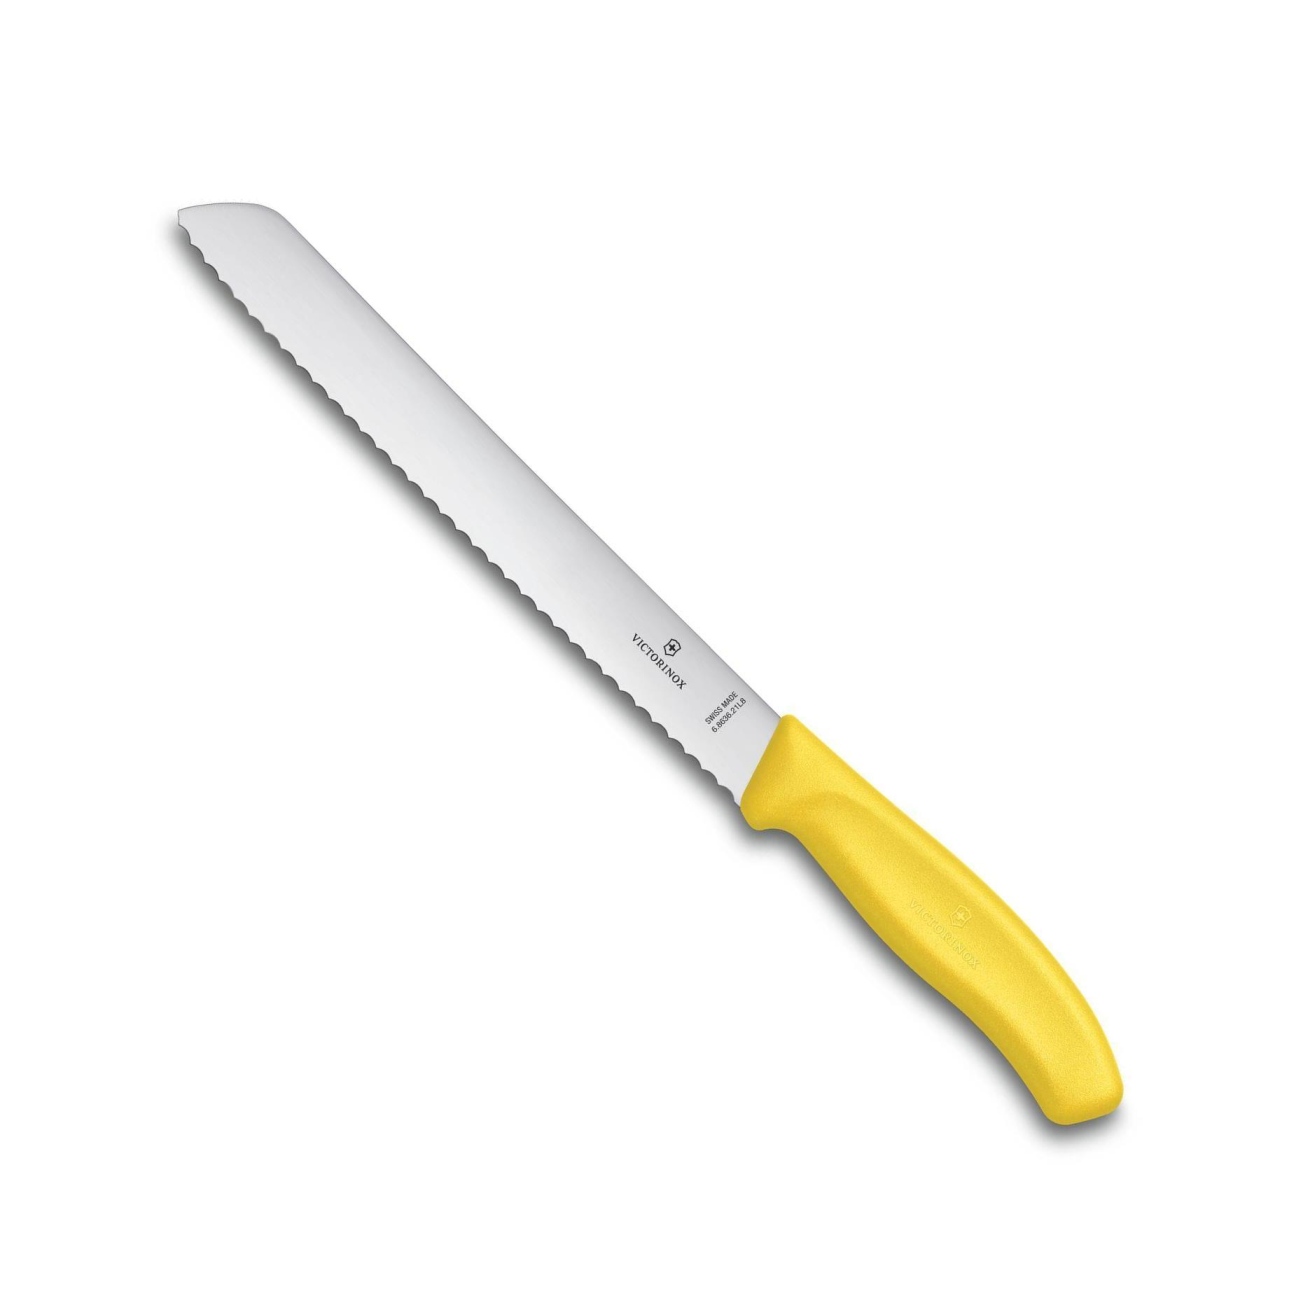 Nůž na chleba a pečivo SWISS CLASSIC 21 cm žlutý - Victorinox